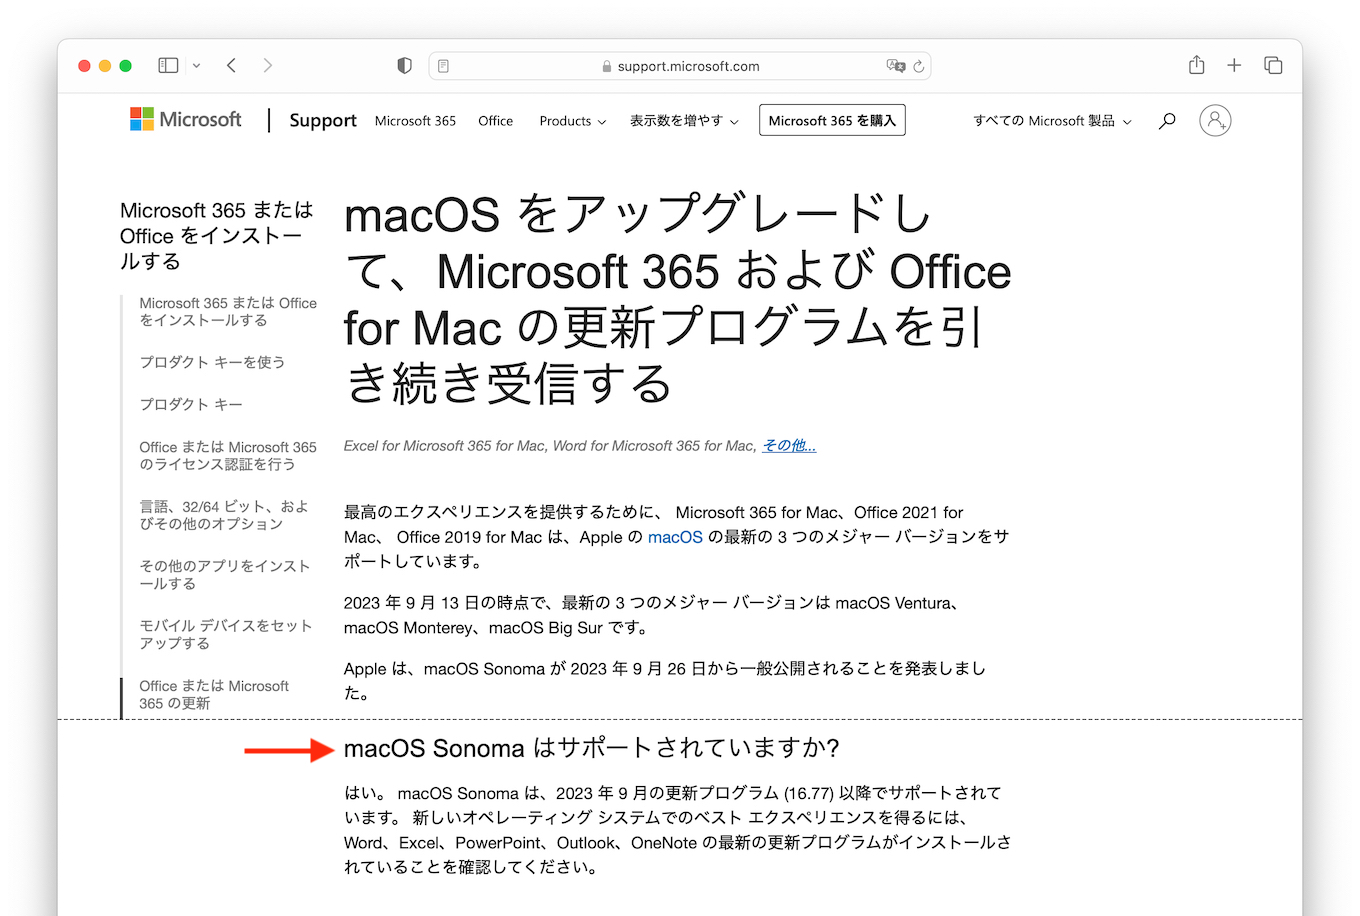 Microsoft 365 for Mac v16.77